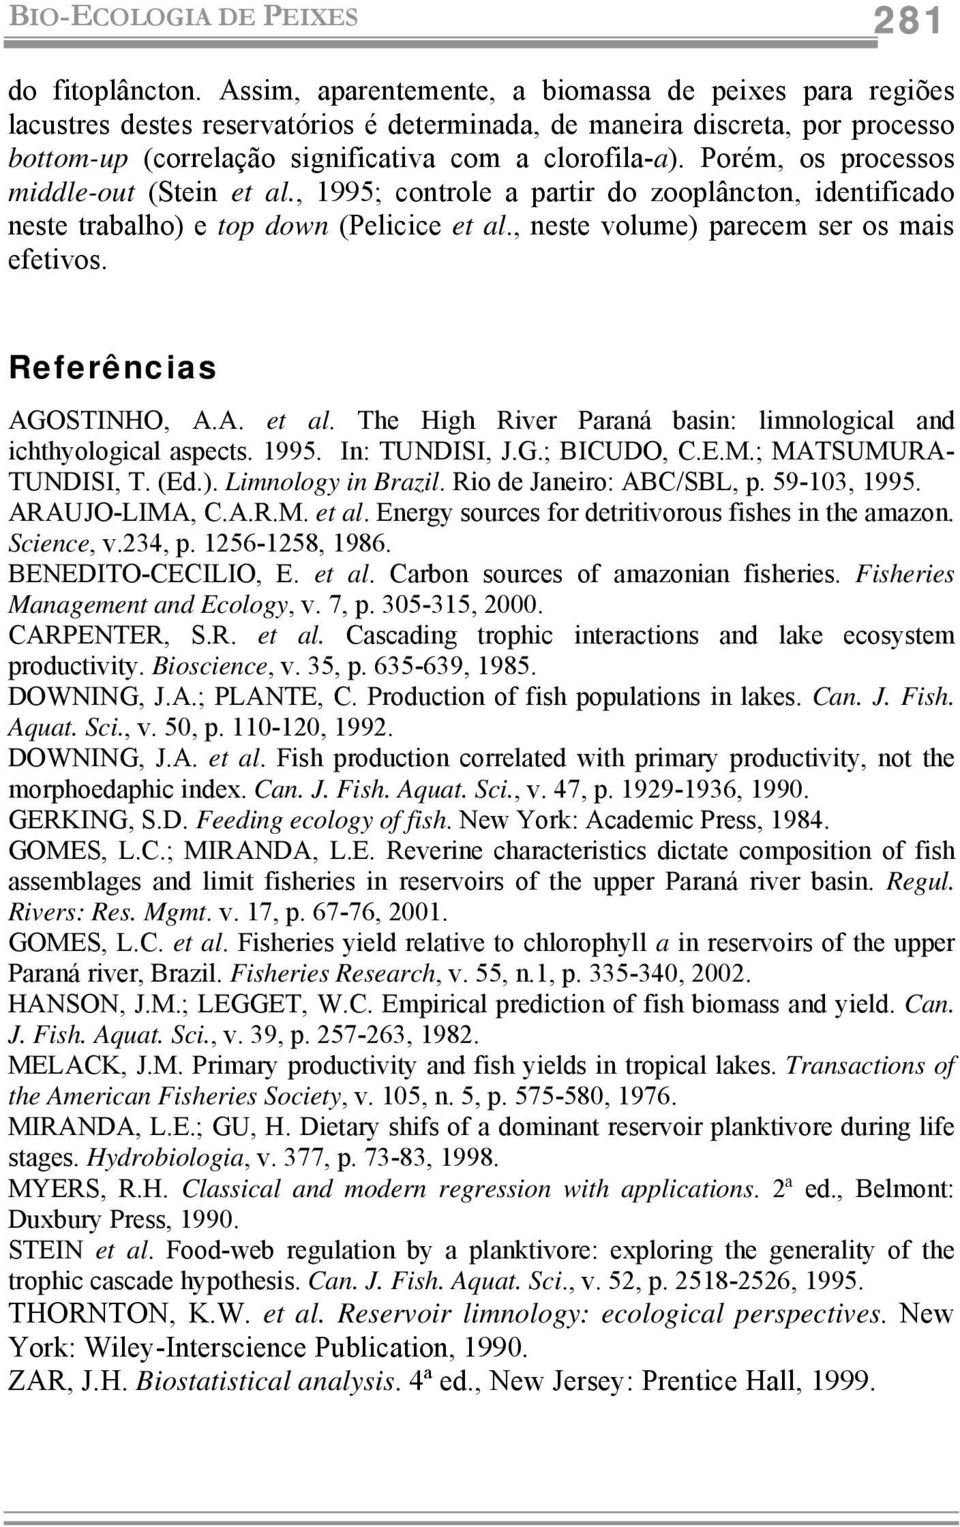 Porém, os processos middle-out (Stein et al., 1995; controle a partir do zooplâncton, identificado neste trabalho) e top down (Pelicice et al., neste volume) parecem ser os mais efetivos.